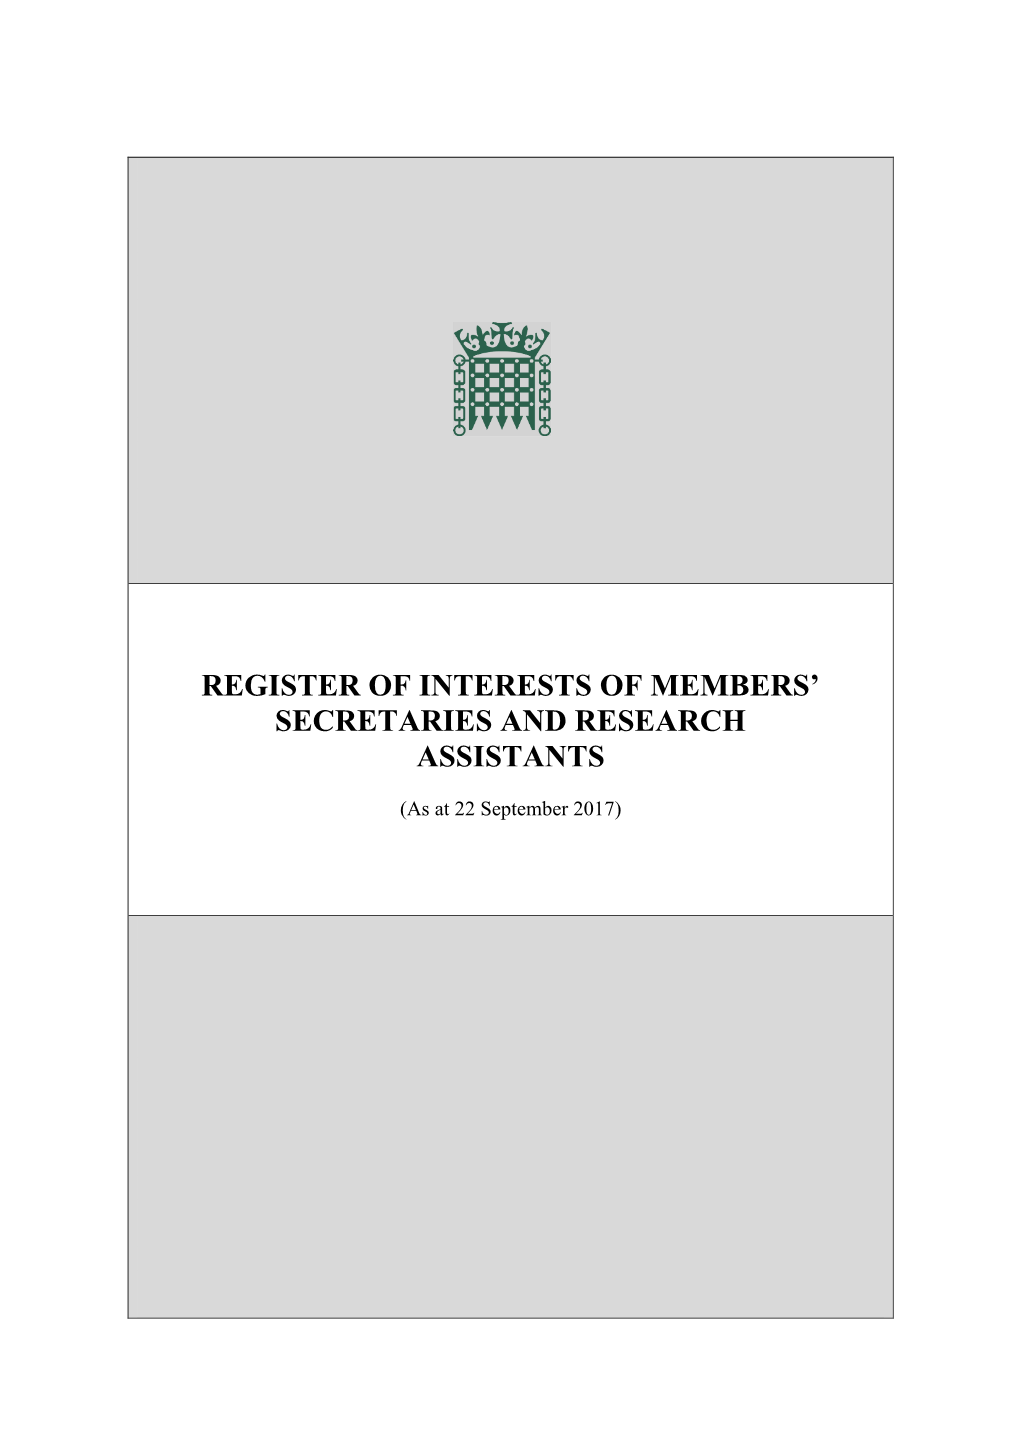 Register of Interests of Members' Secretaries And